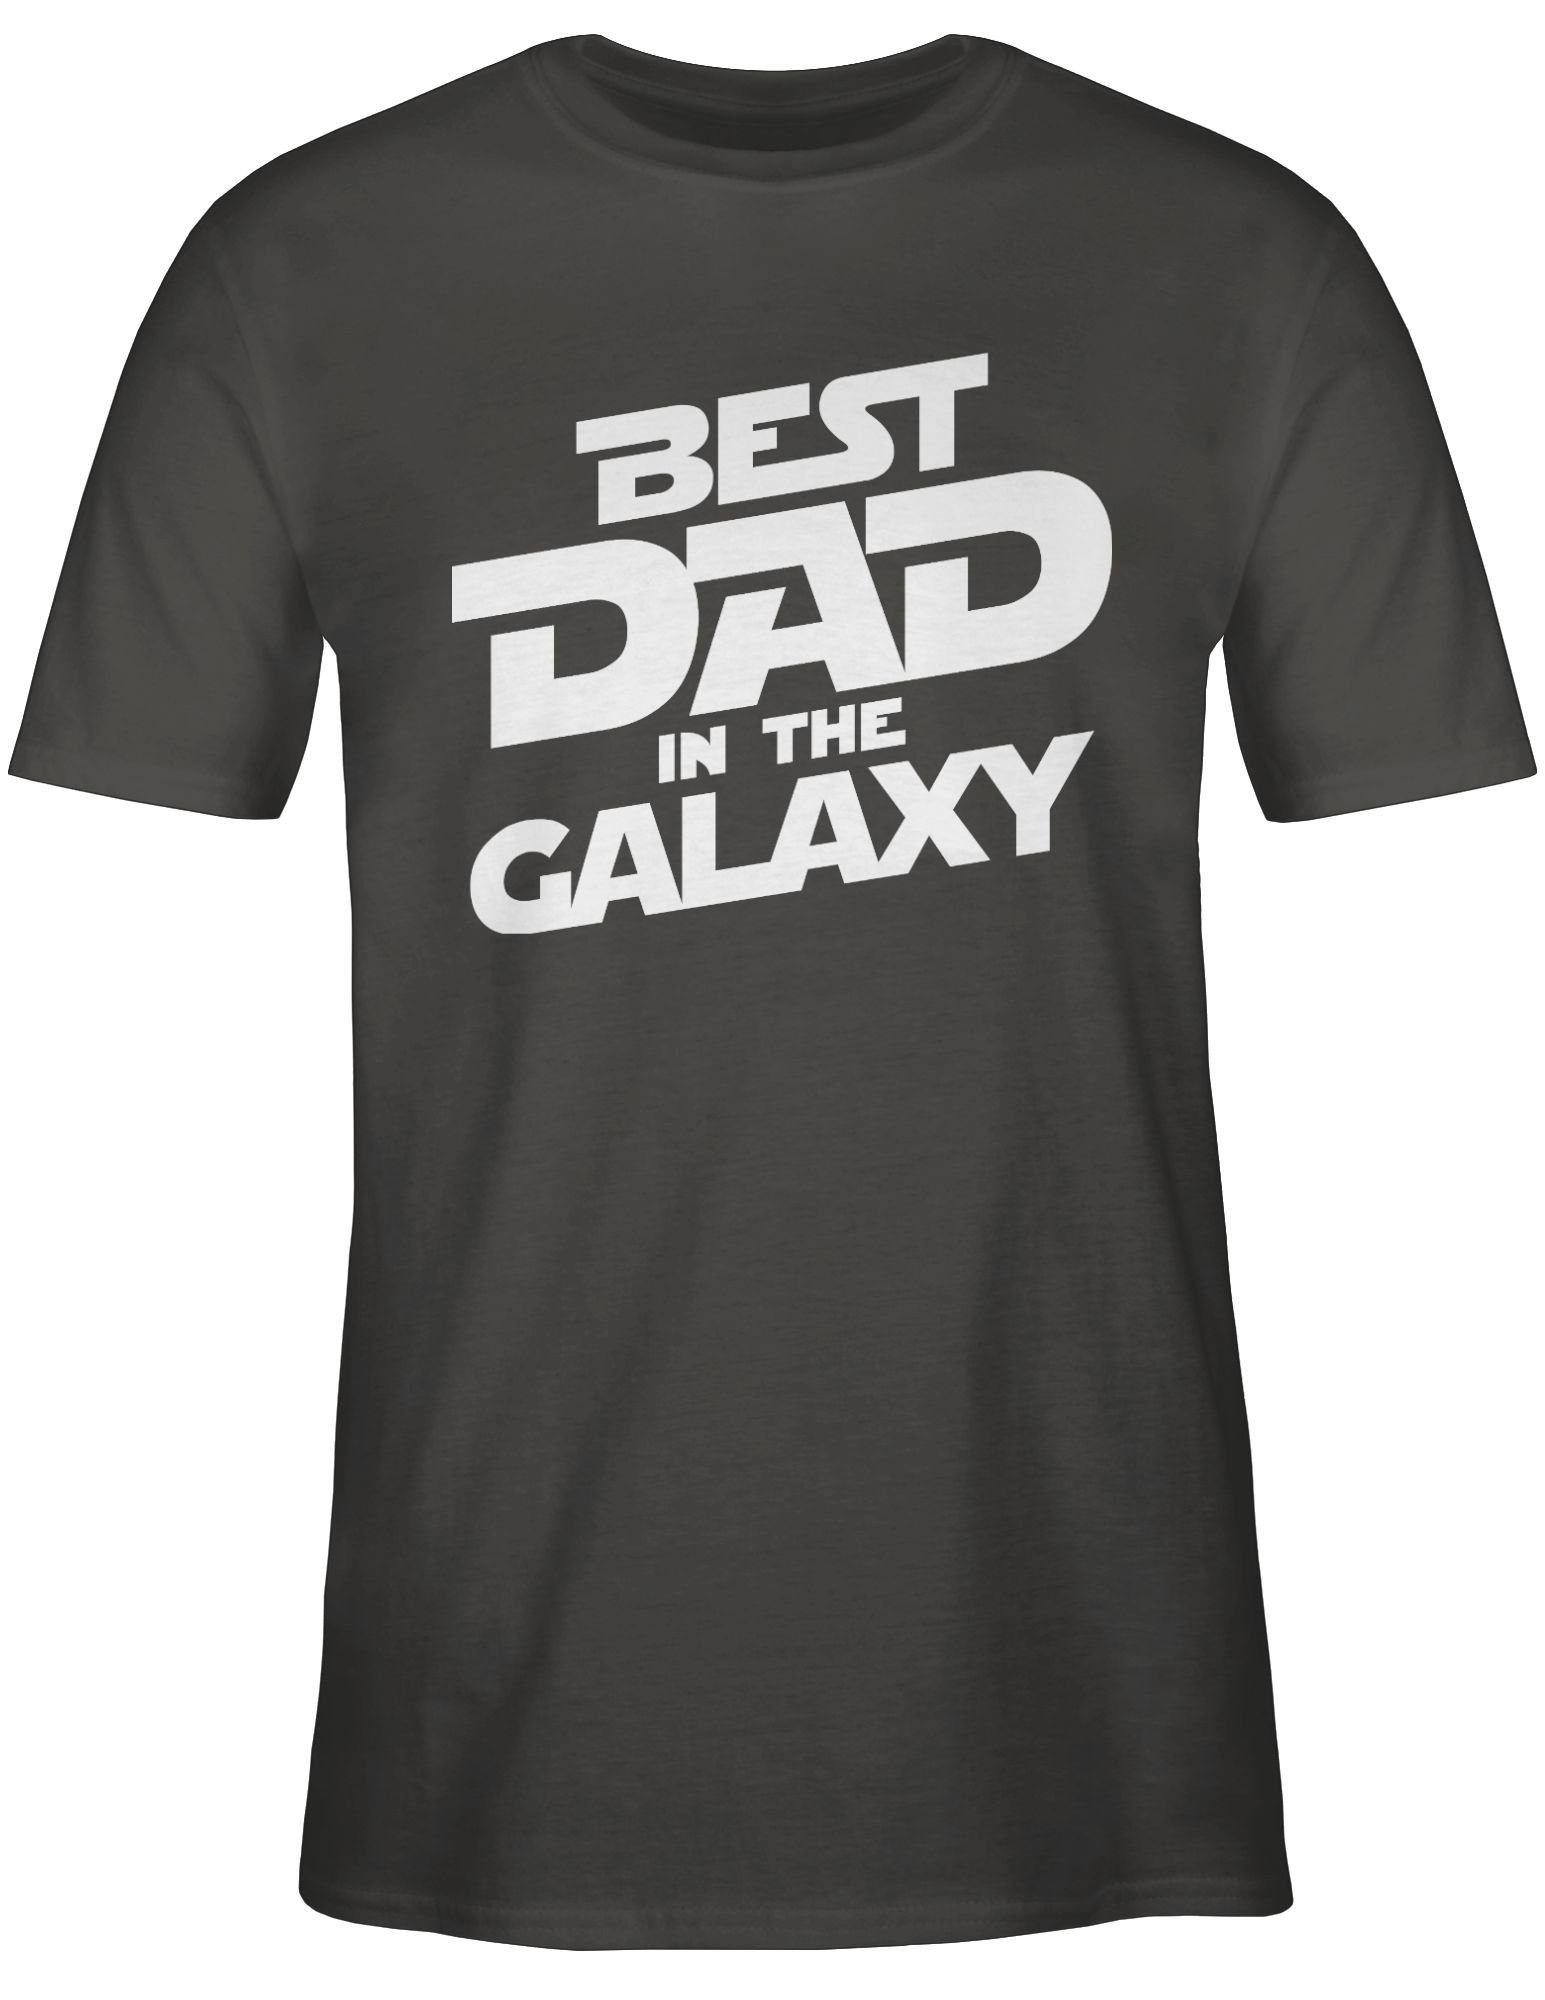 Shirtracer T-Shirt Best dad in Papa galaxy 02 the für Vatertag weiß Dunkelgrau Geschenk